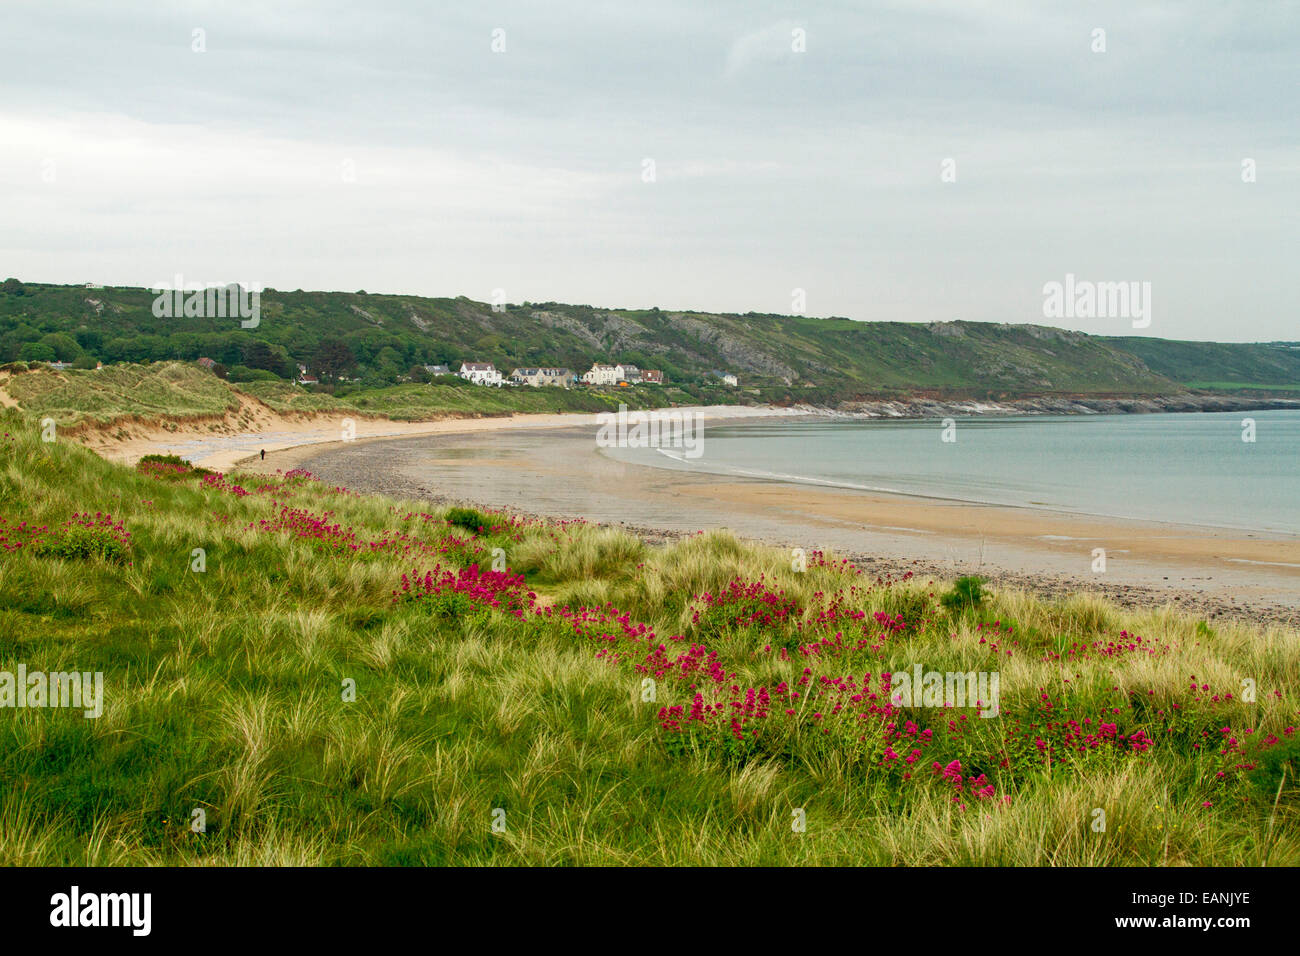 Playa de arena y amplia bahía esmeralda con hierba y flores silvestres valeriana roja sobre dunas bajas cerca de la aldea de Port Eynon, Gales Foto de stock